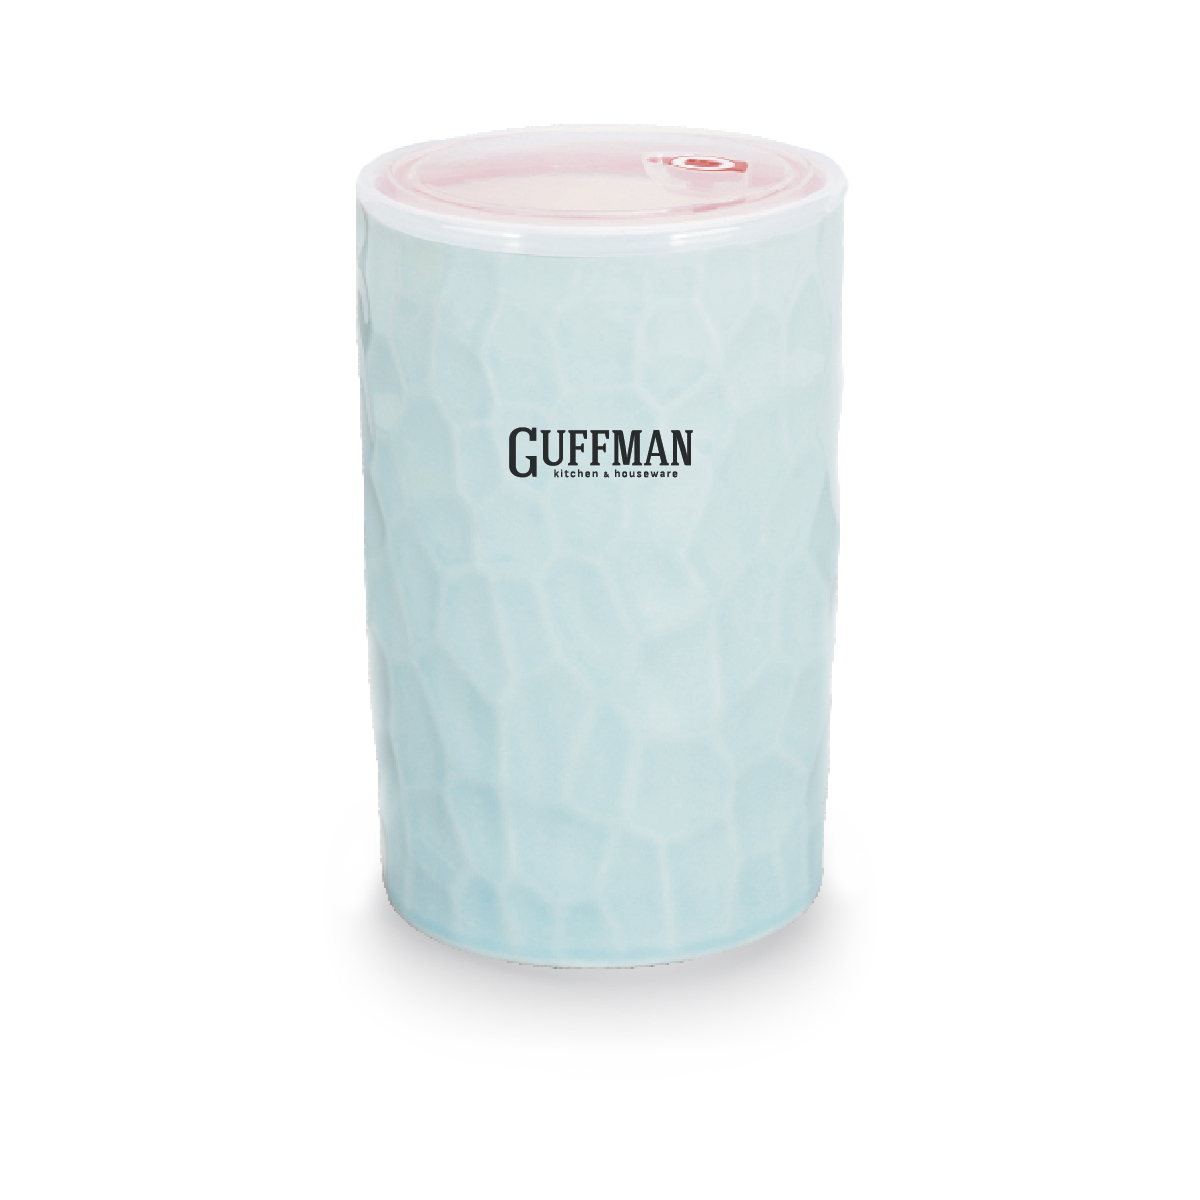 Банка керамическая Guffman 600 мл голубой банка для сыпучих продуктов ricco 1 2 л 11 2×11 2×14 5 см голубой